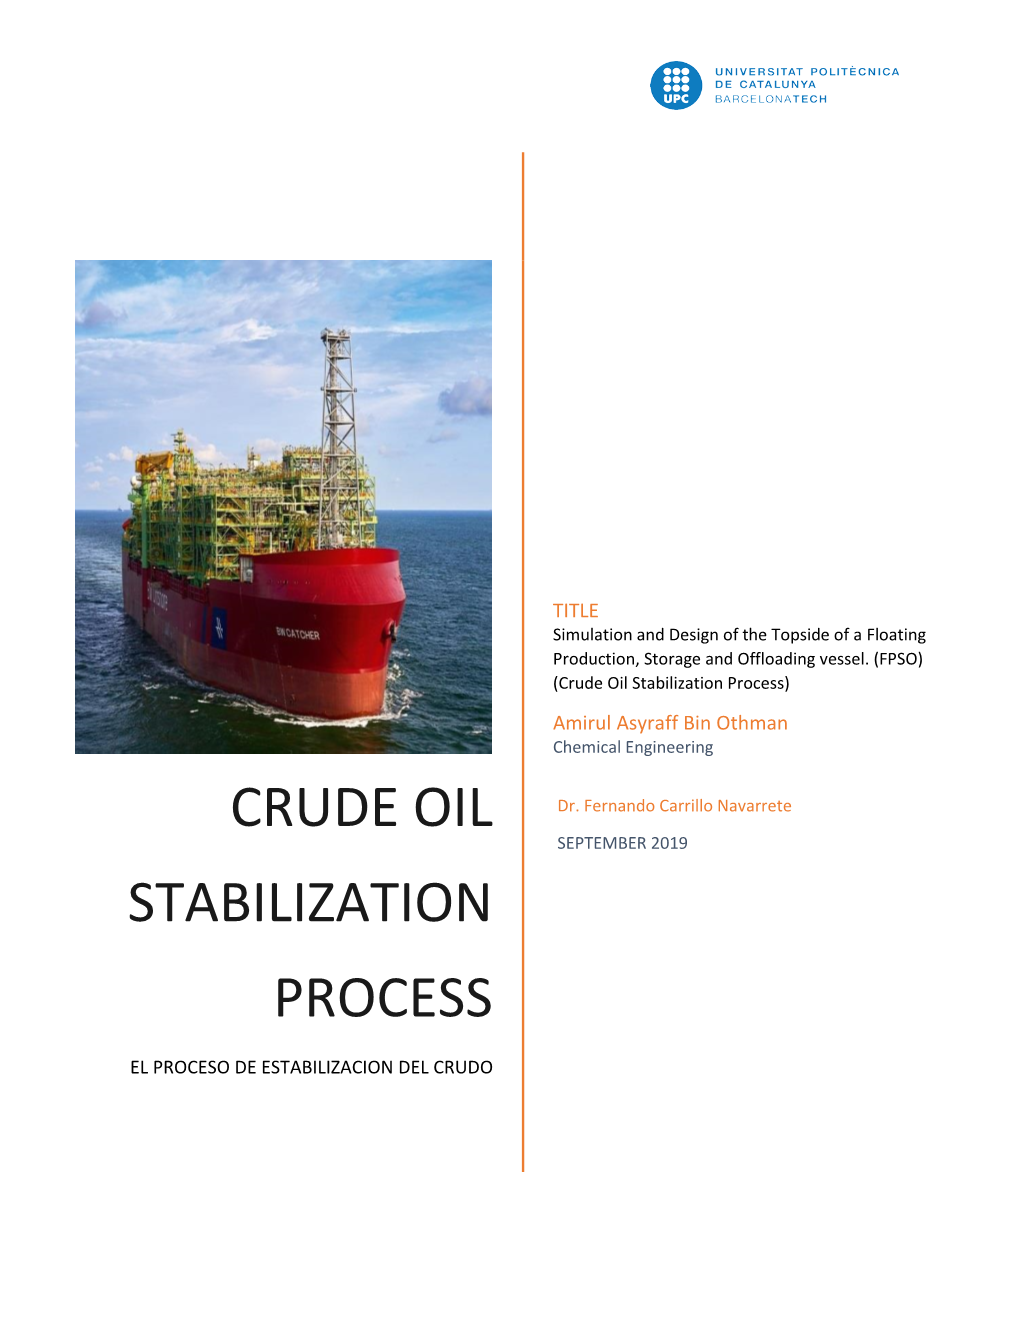 Crude Oil Stabilization Process) Amirul Asyraff Bin Othman Chemical Engineering CRUDE OIL Dr